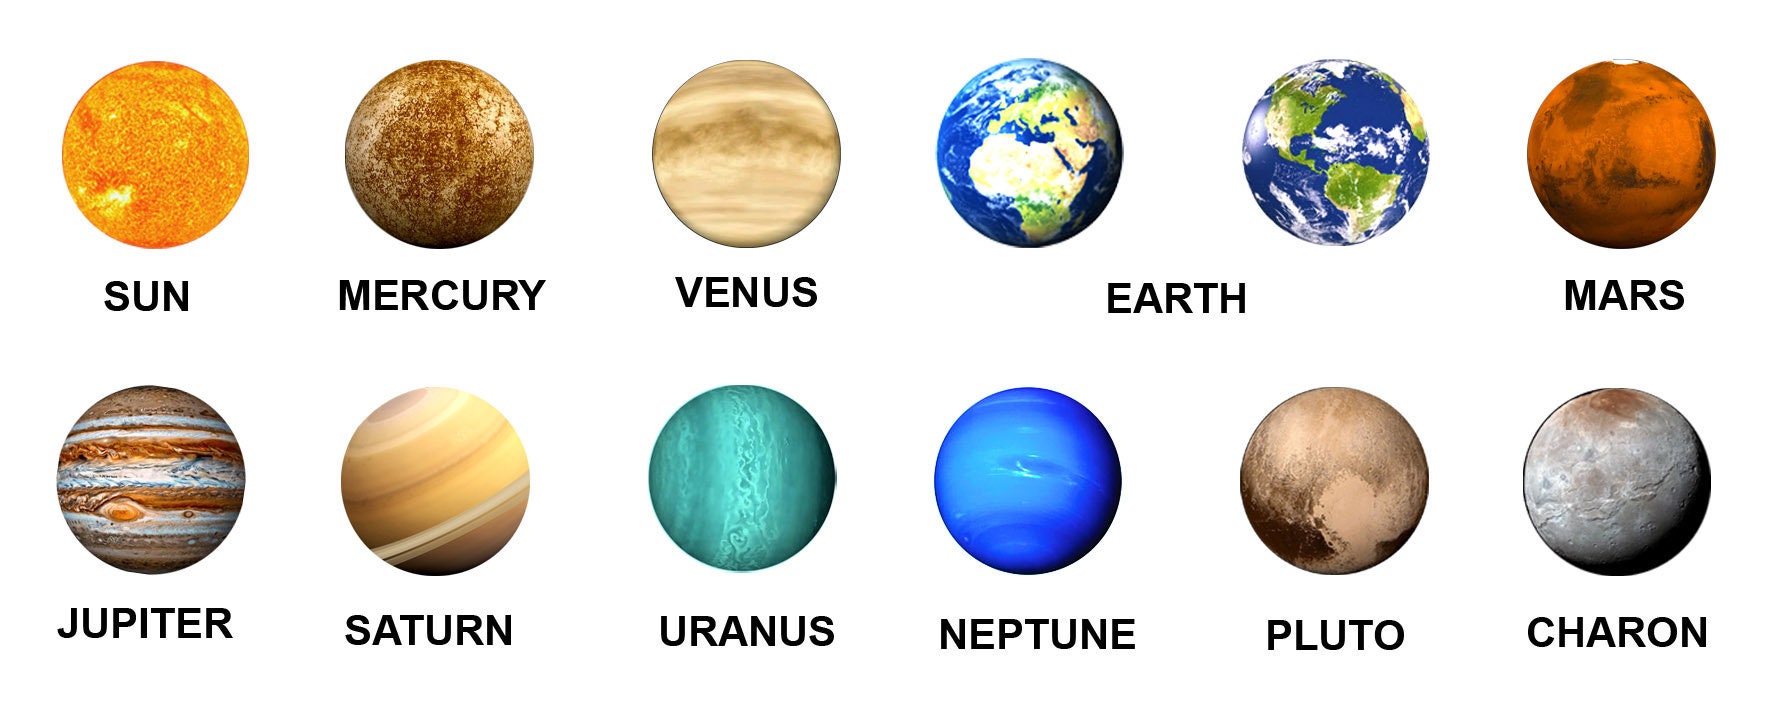 Нептун и плутон и земля